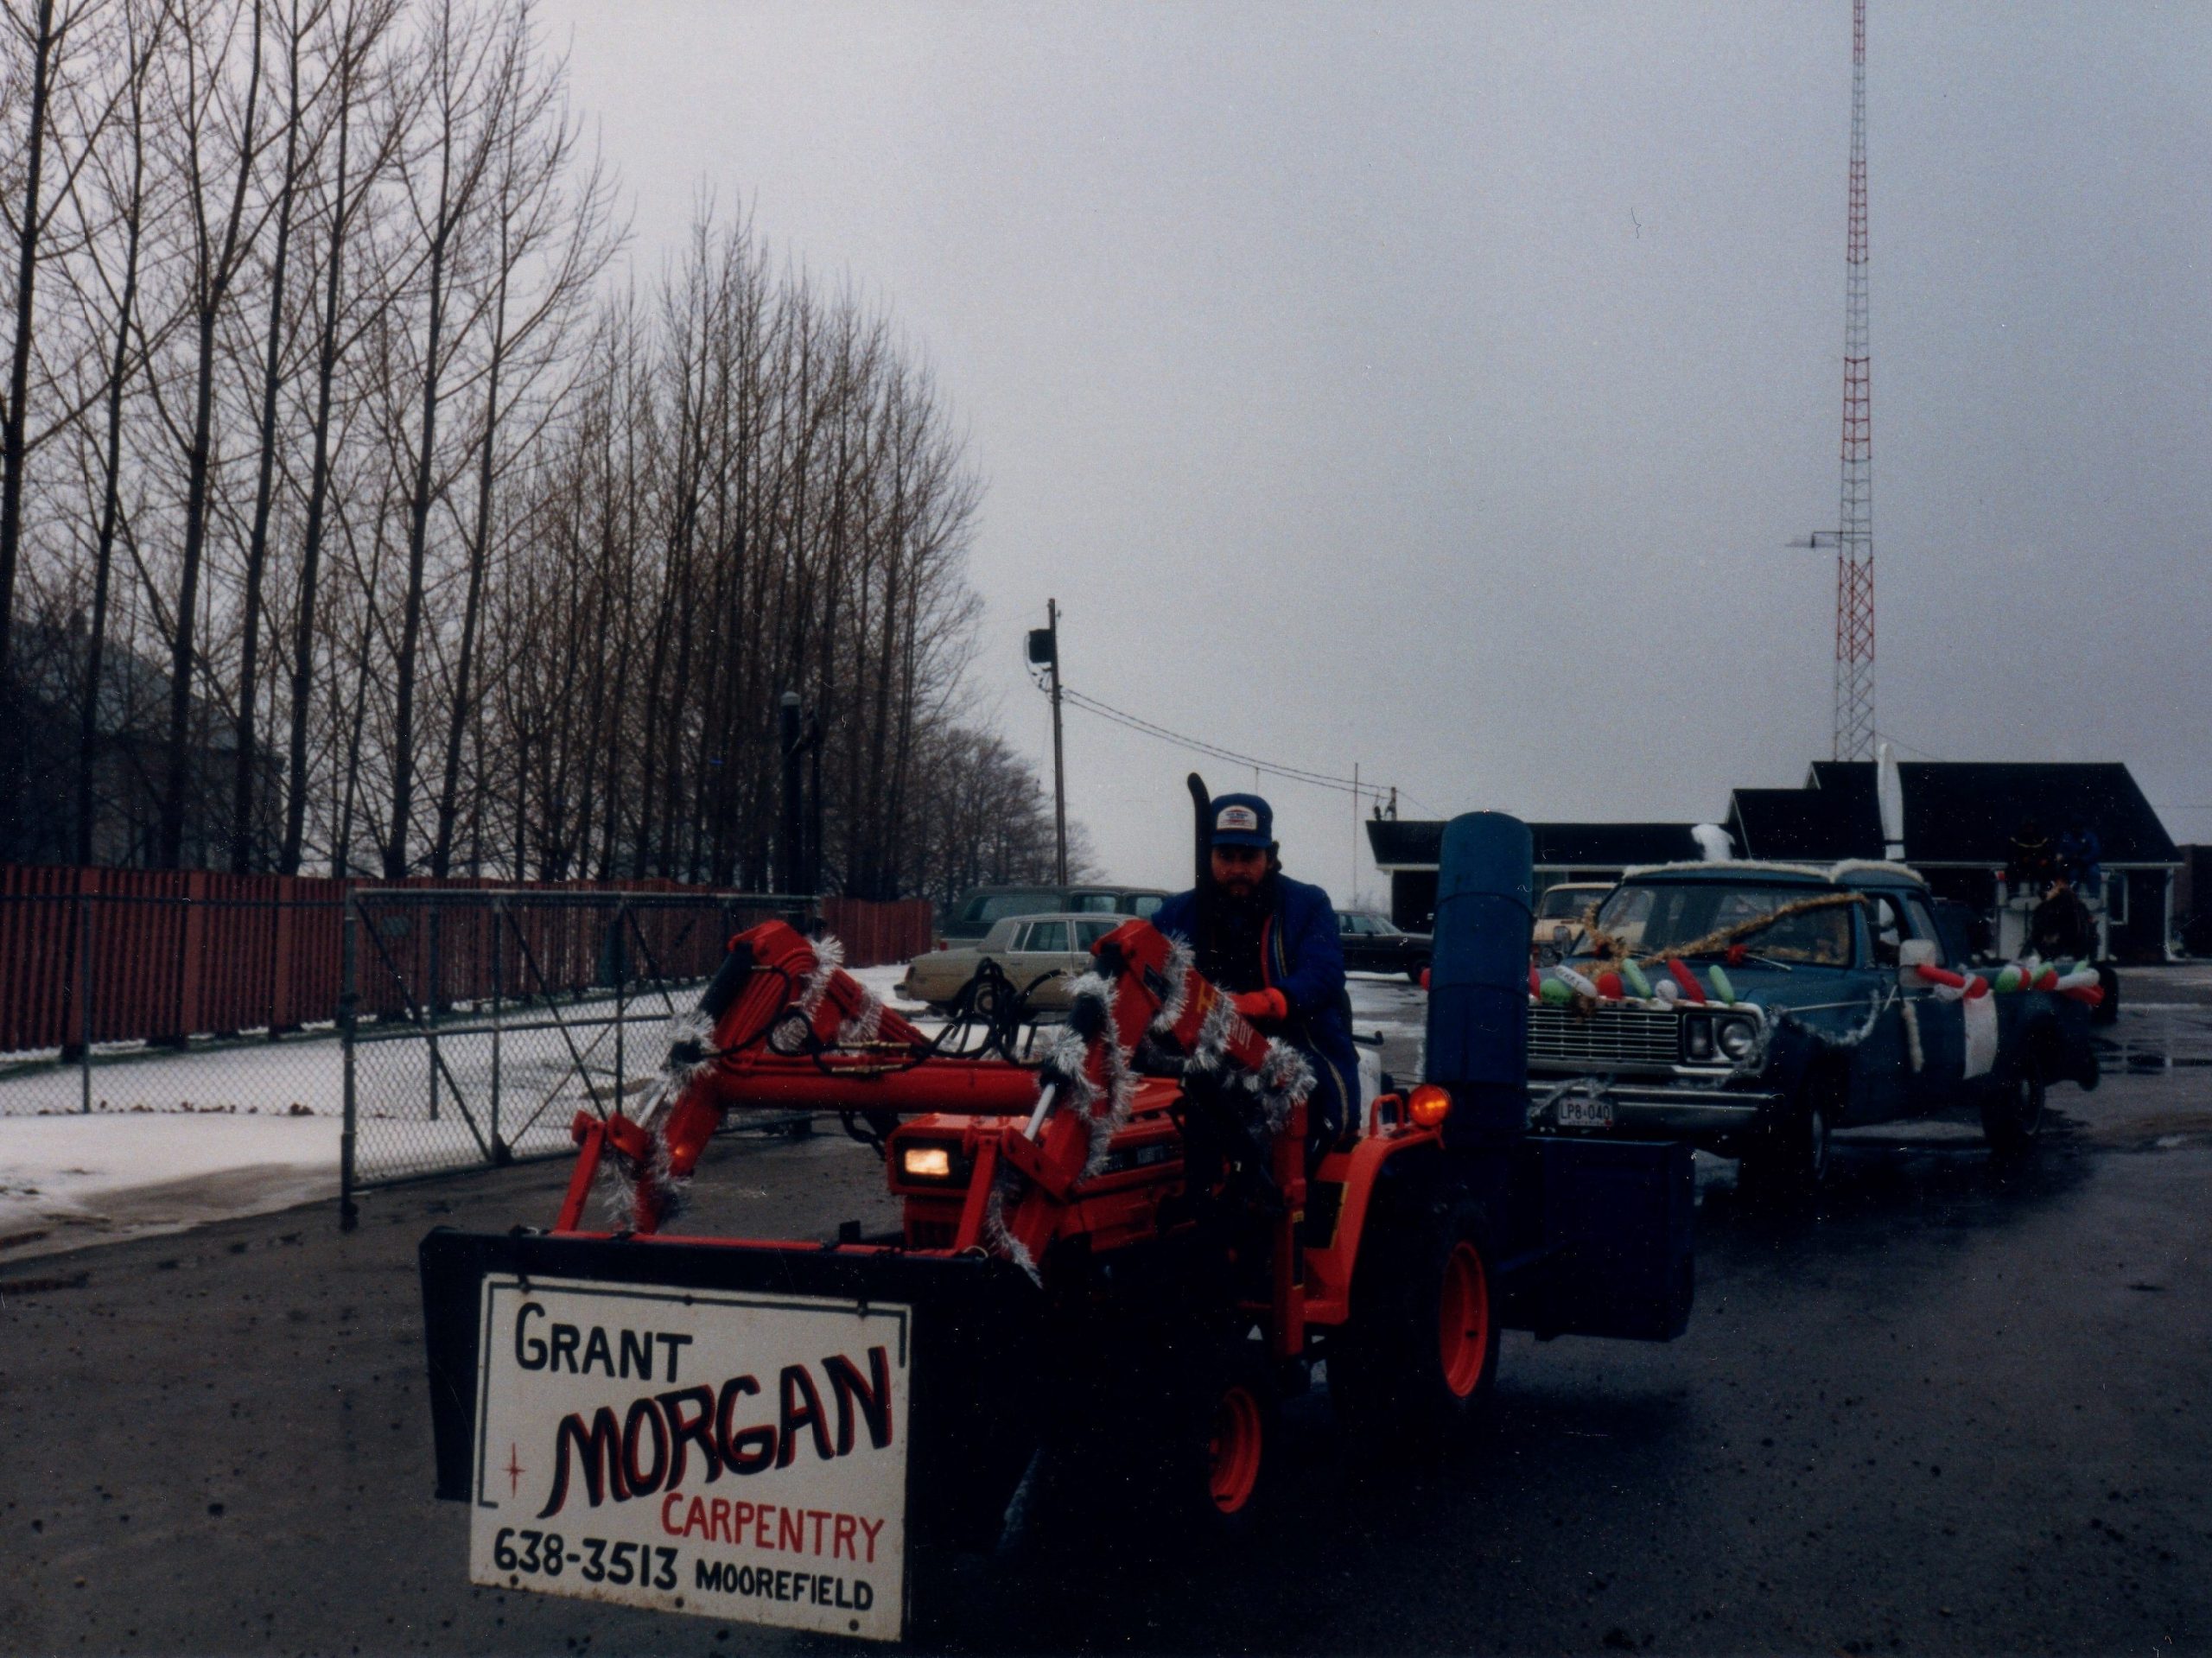 1985-Santa-Claus-Parade-Grant-Morgan-Carpentry-1